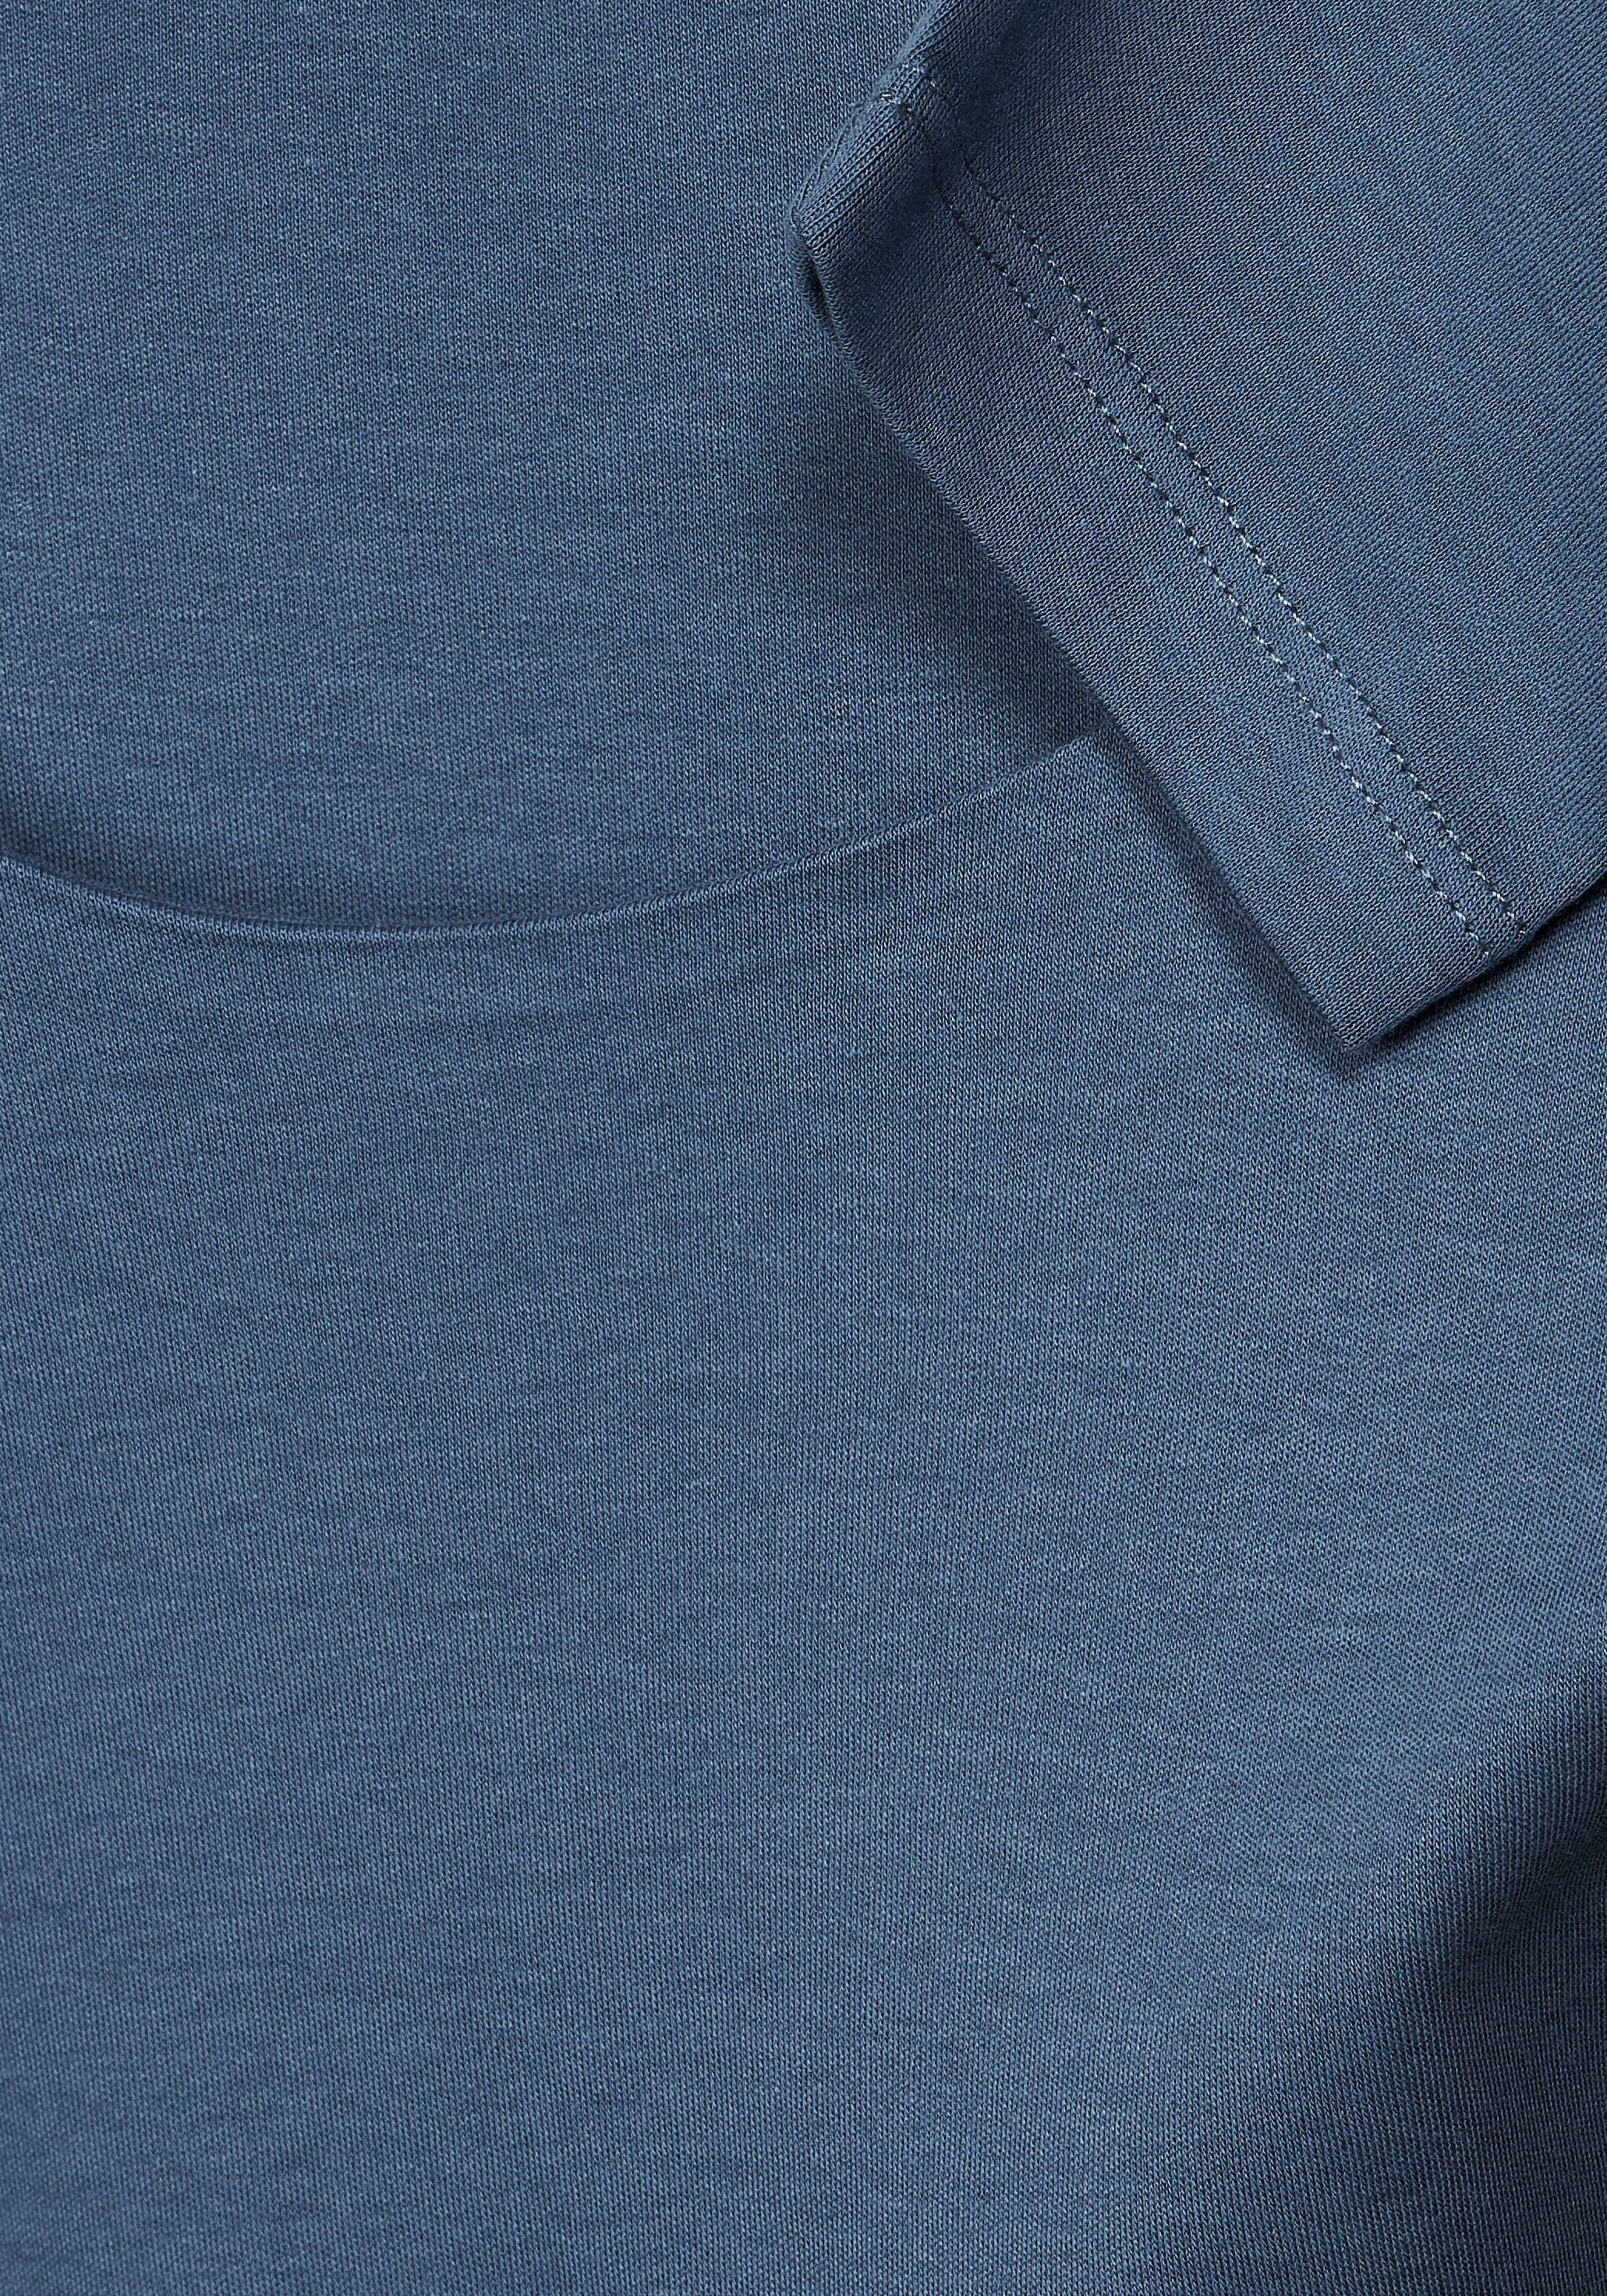 bay ONE schlichter 3/4-Arm-Shirt Unifarbe Style STREET in blue Pania dark